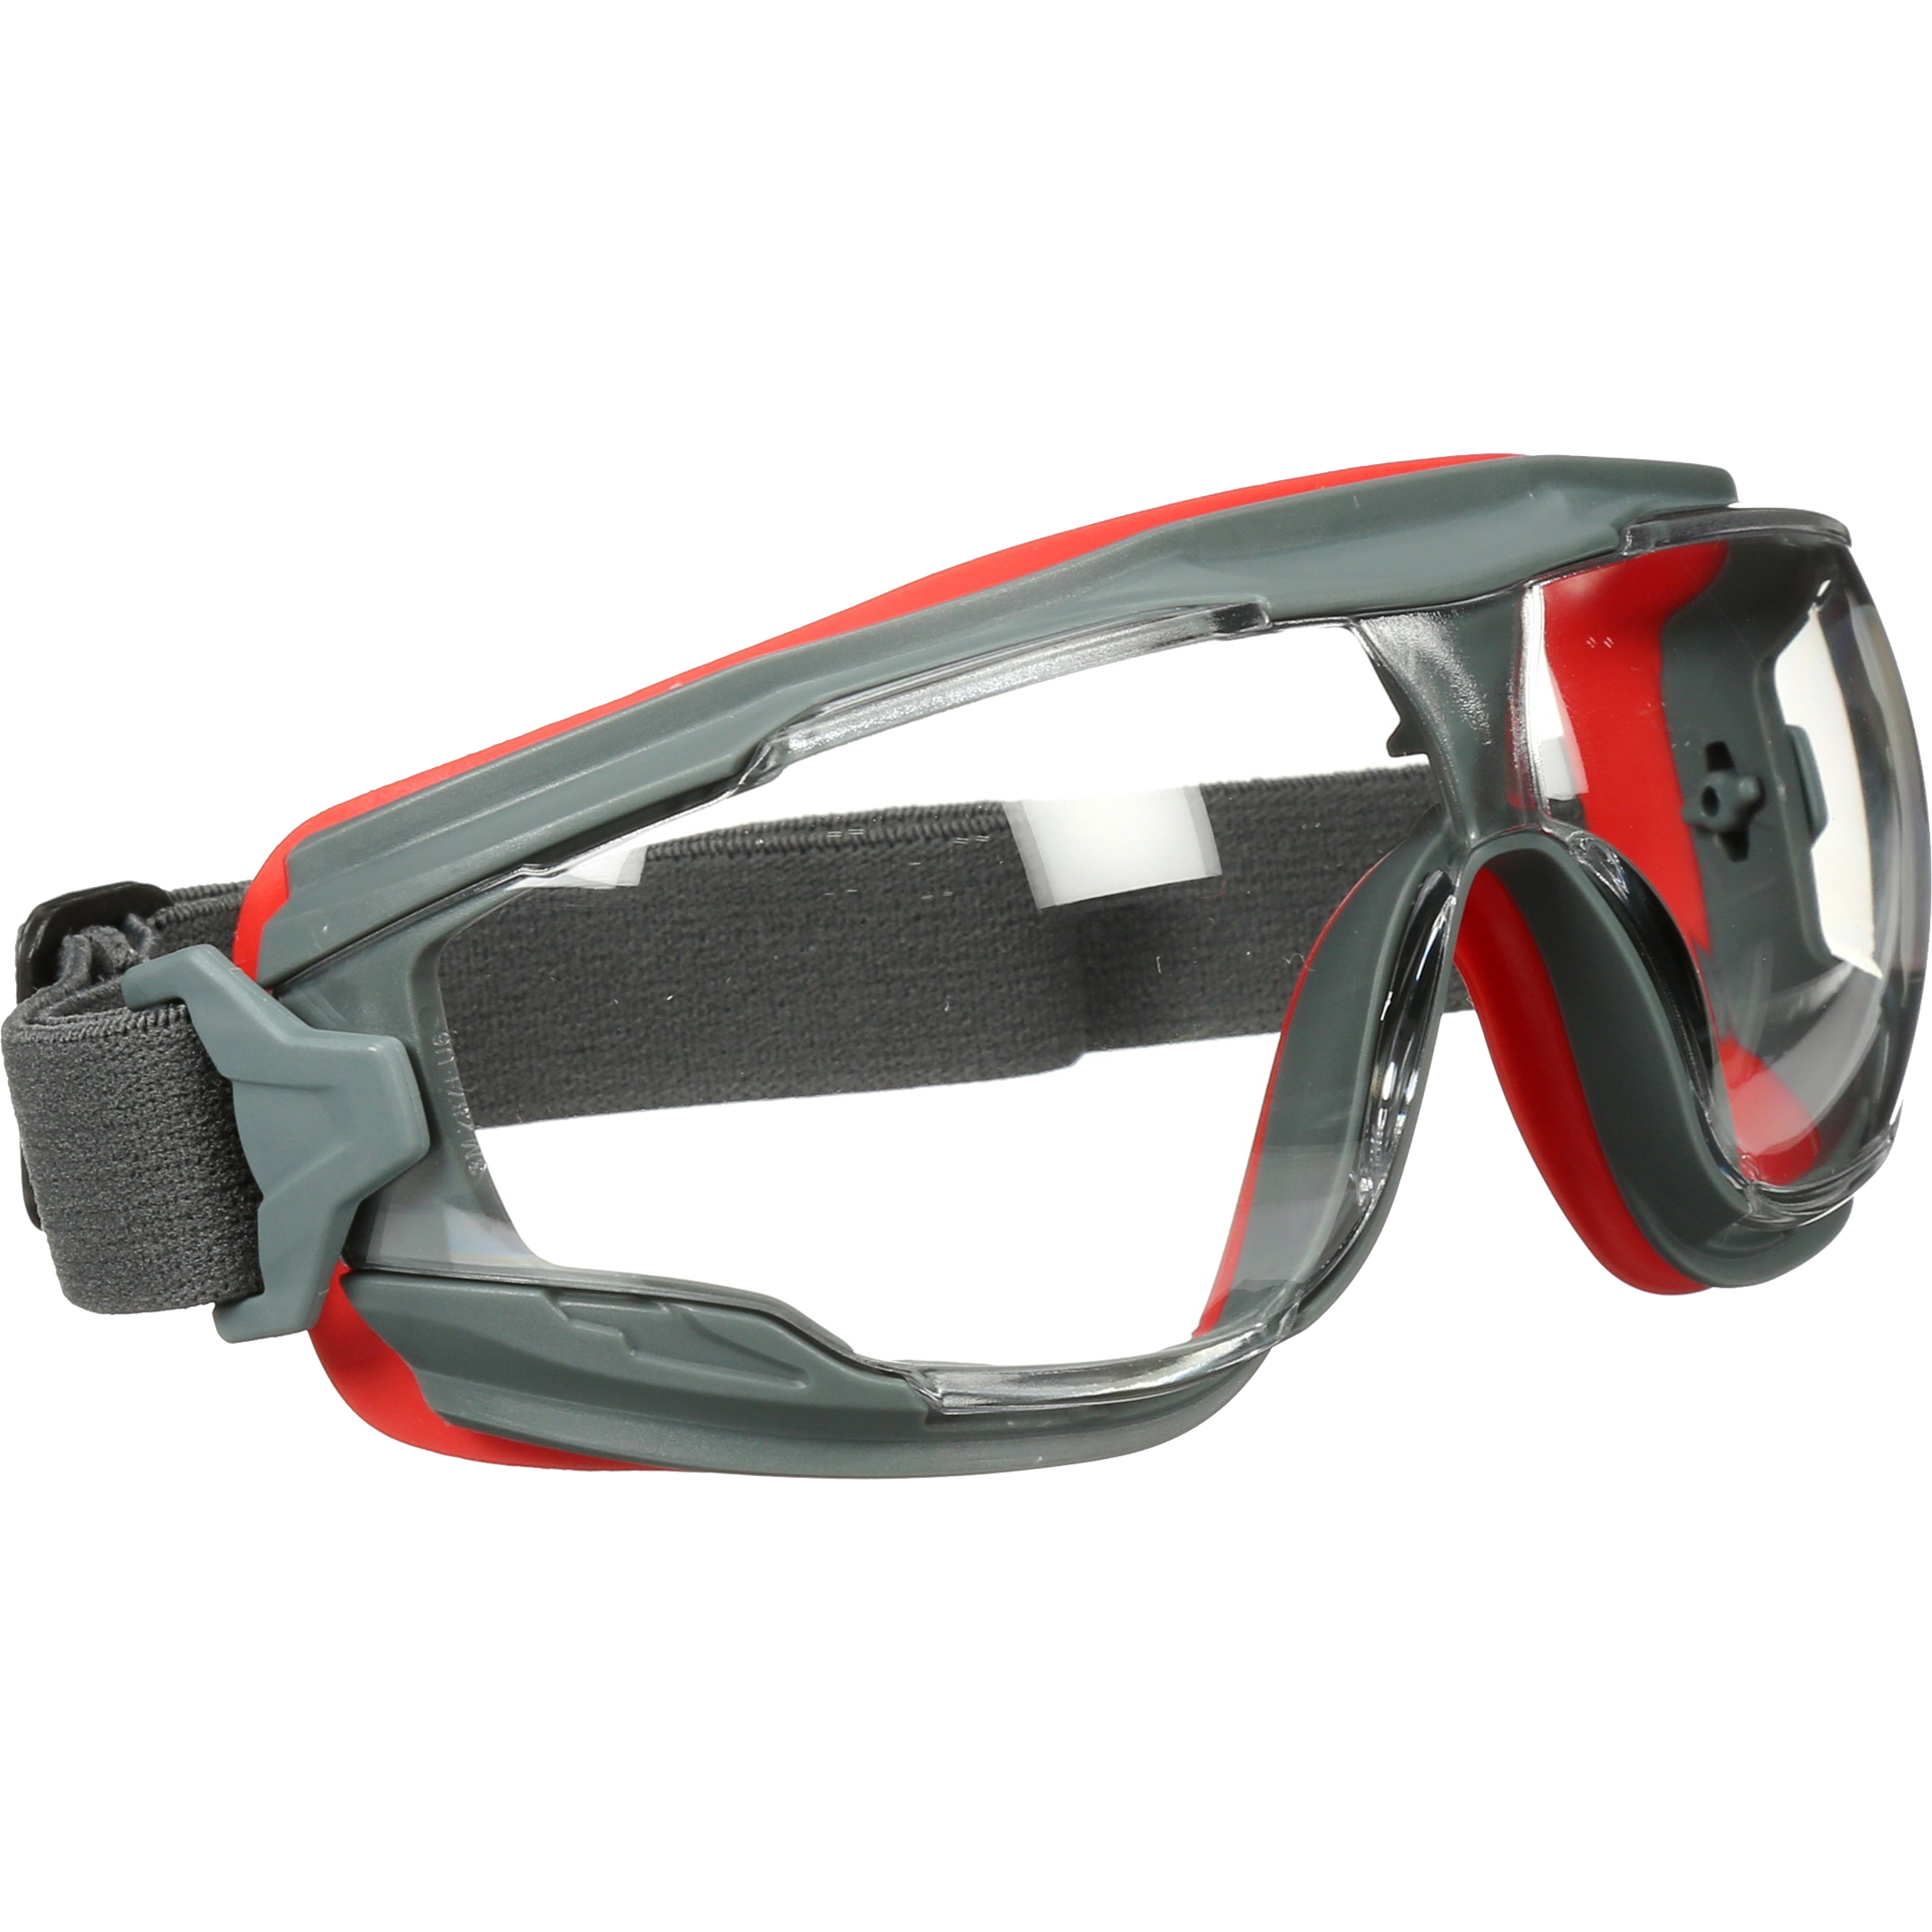 Защитные очки и наушники. Очки 3m gg501. Очки защитные 3м gg501. Очки защитные очки 3m gg501. Очки защитные 3m gg501 закрытые.